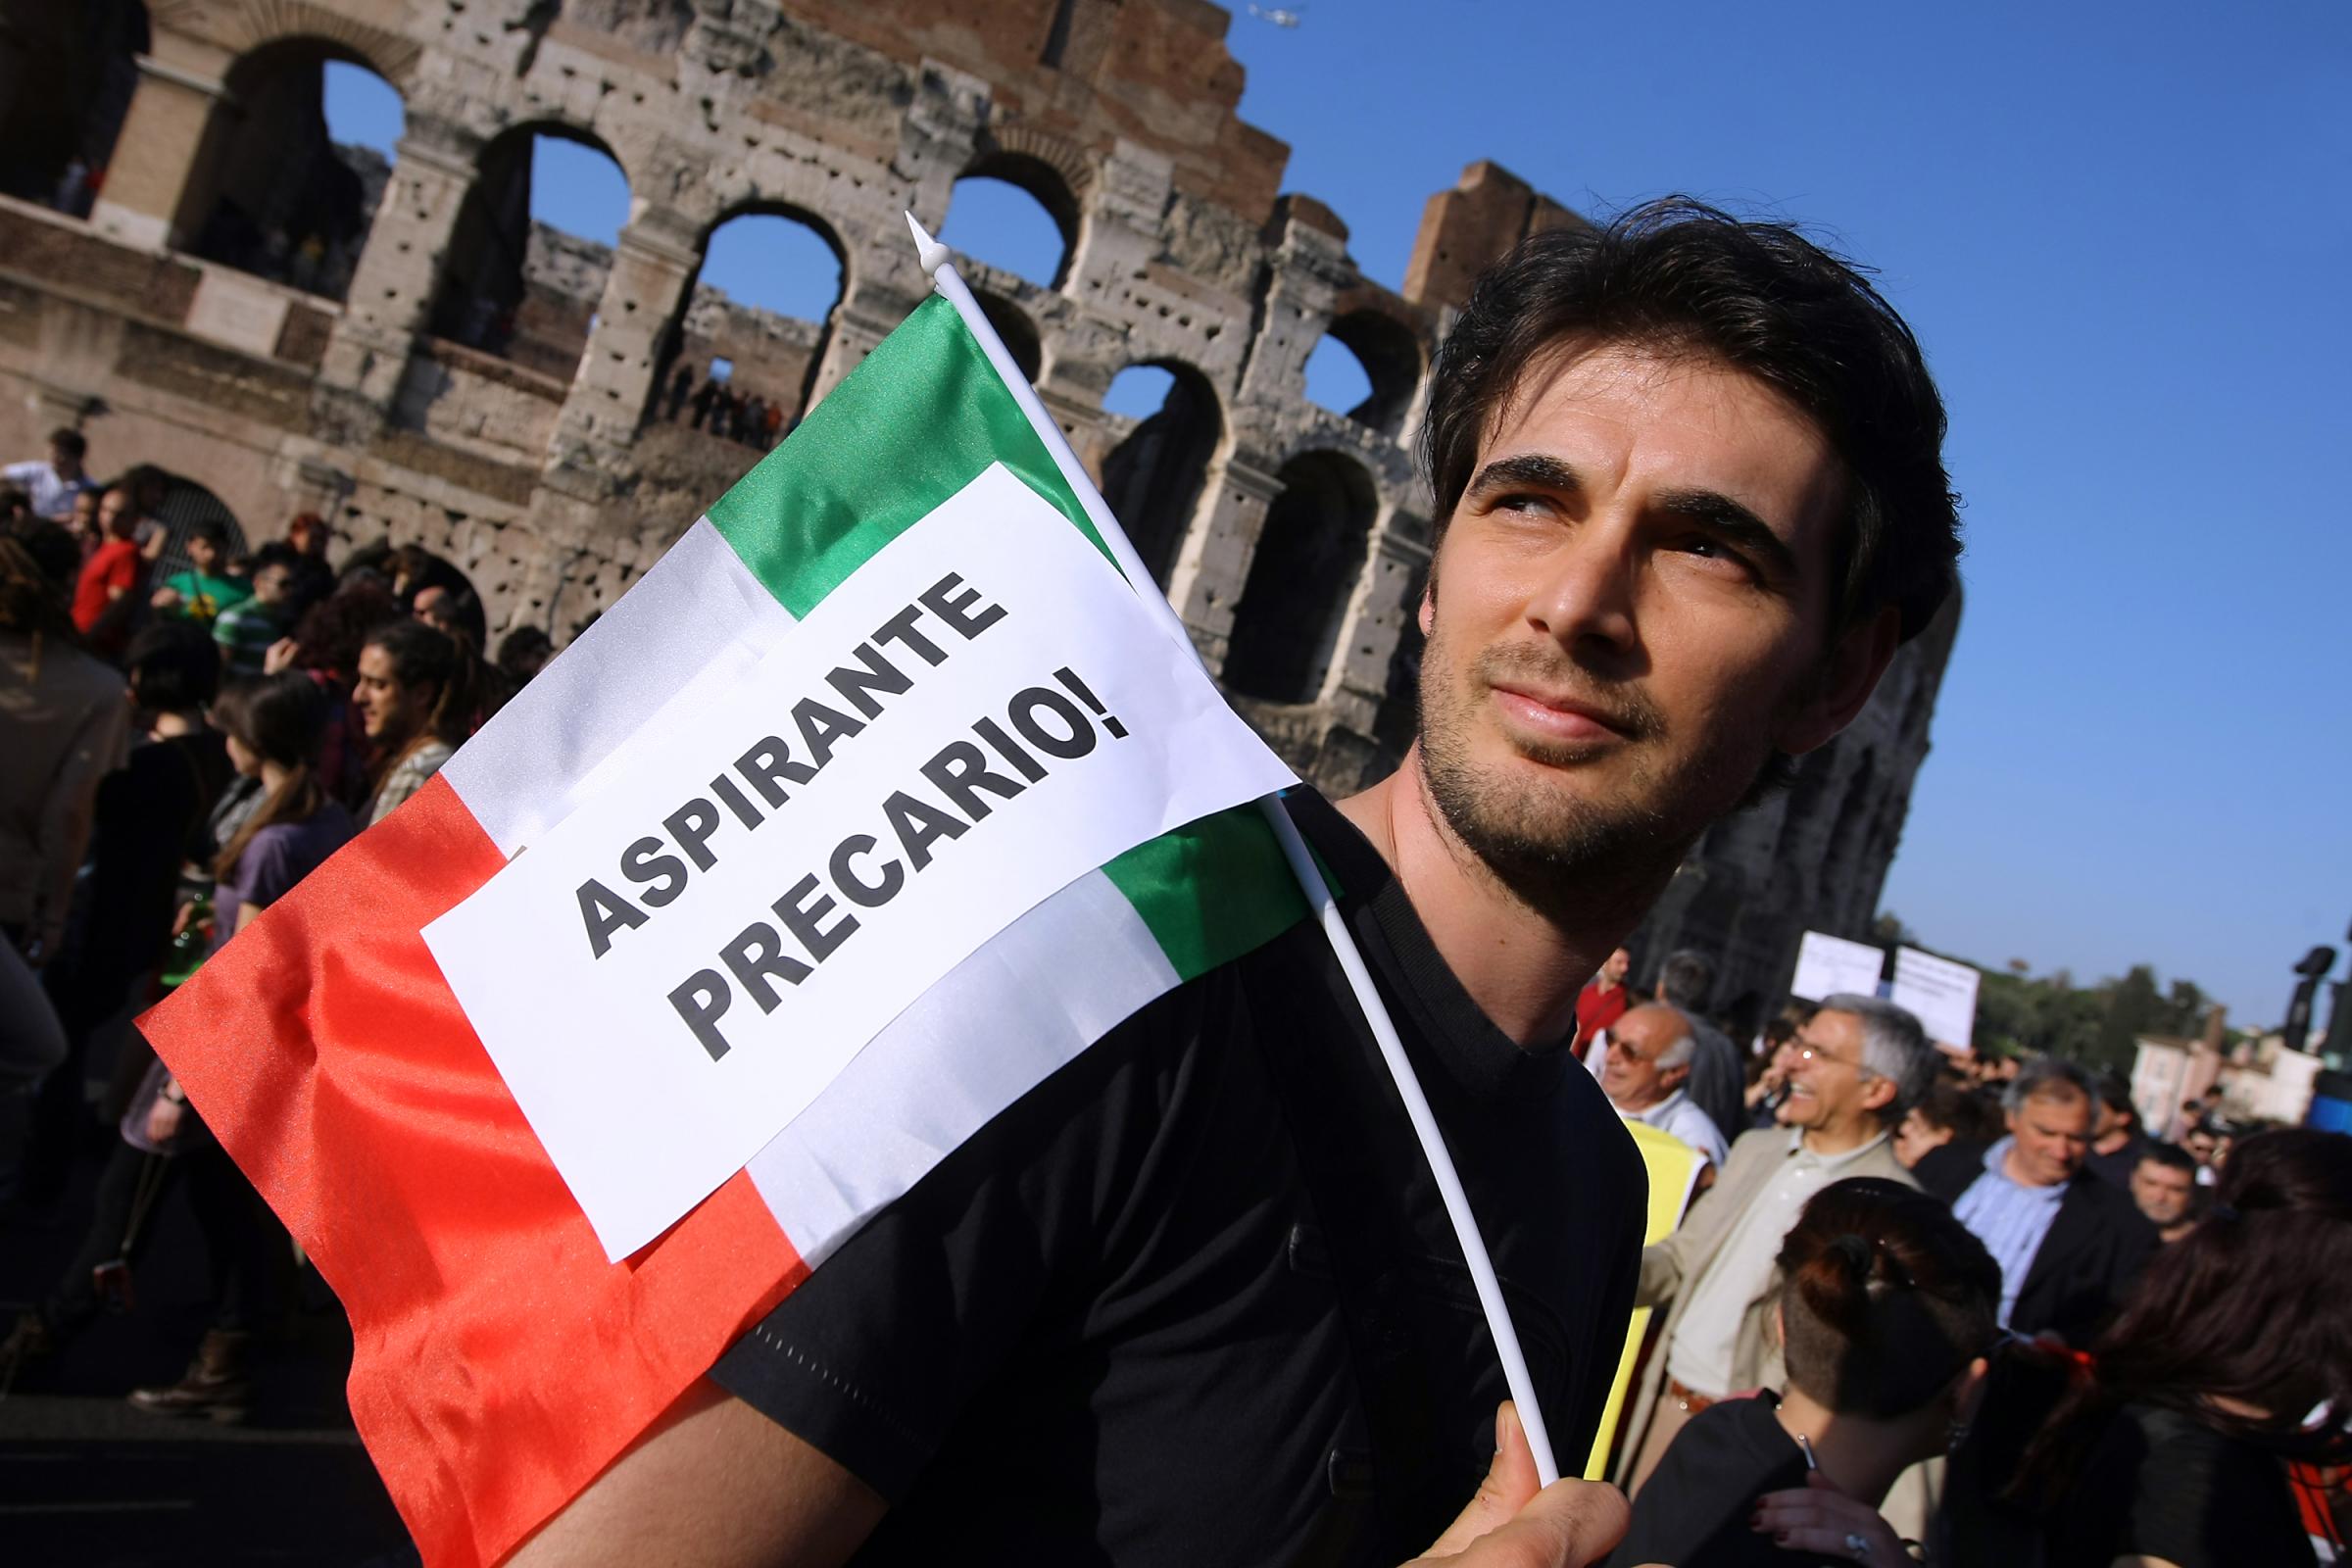  Meno della metà dei giovani italiani punta al posto fisso